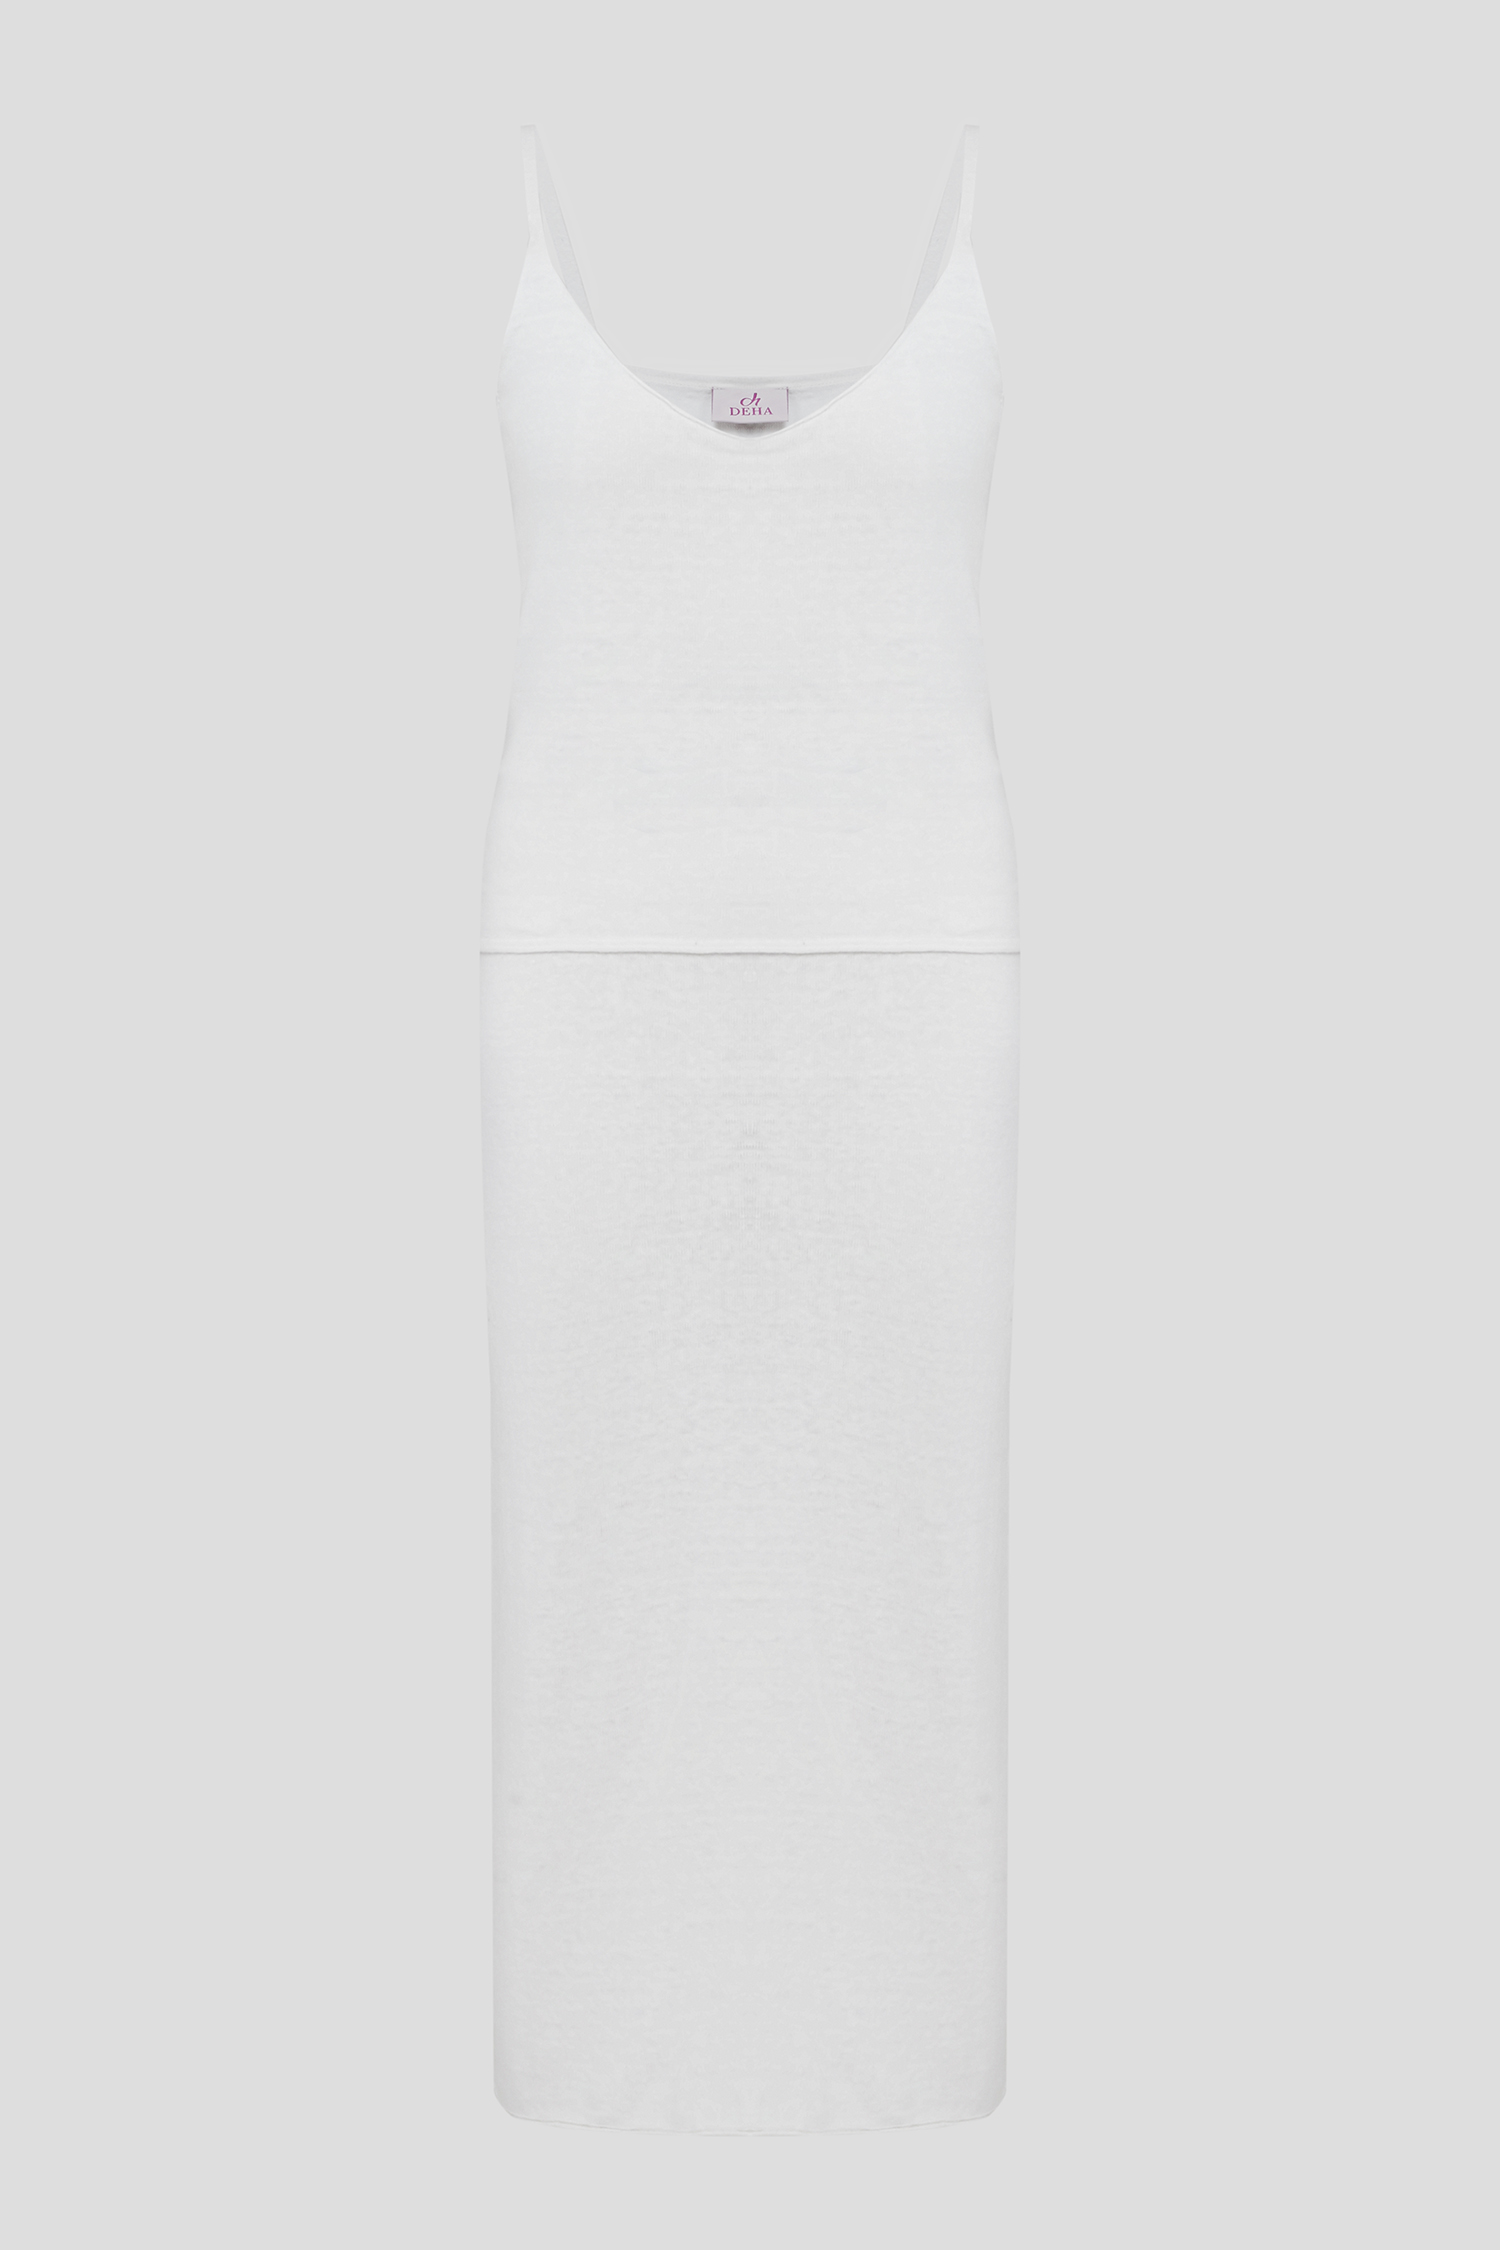 Жіночий білий лляний комплект одягу (топ, спідниця) 1